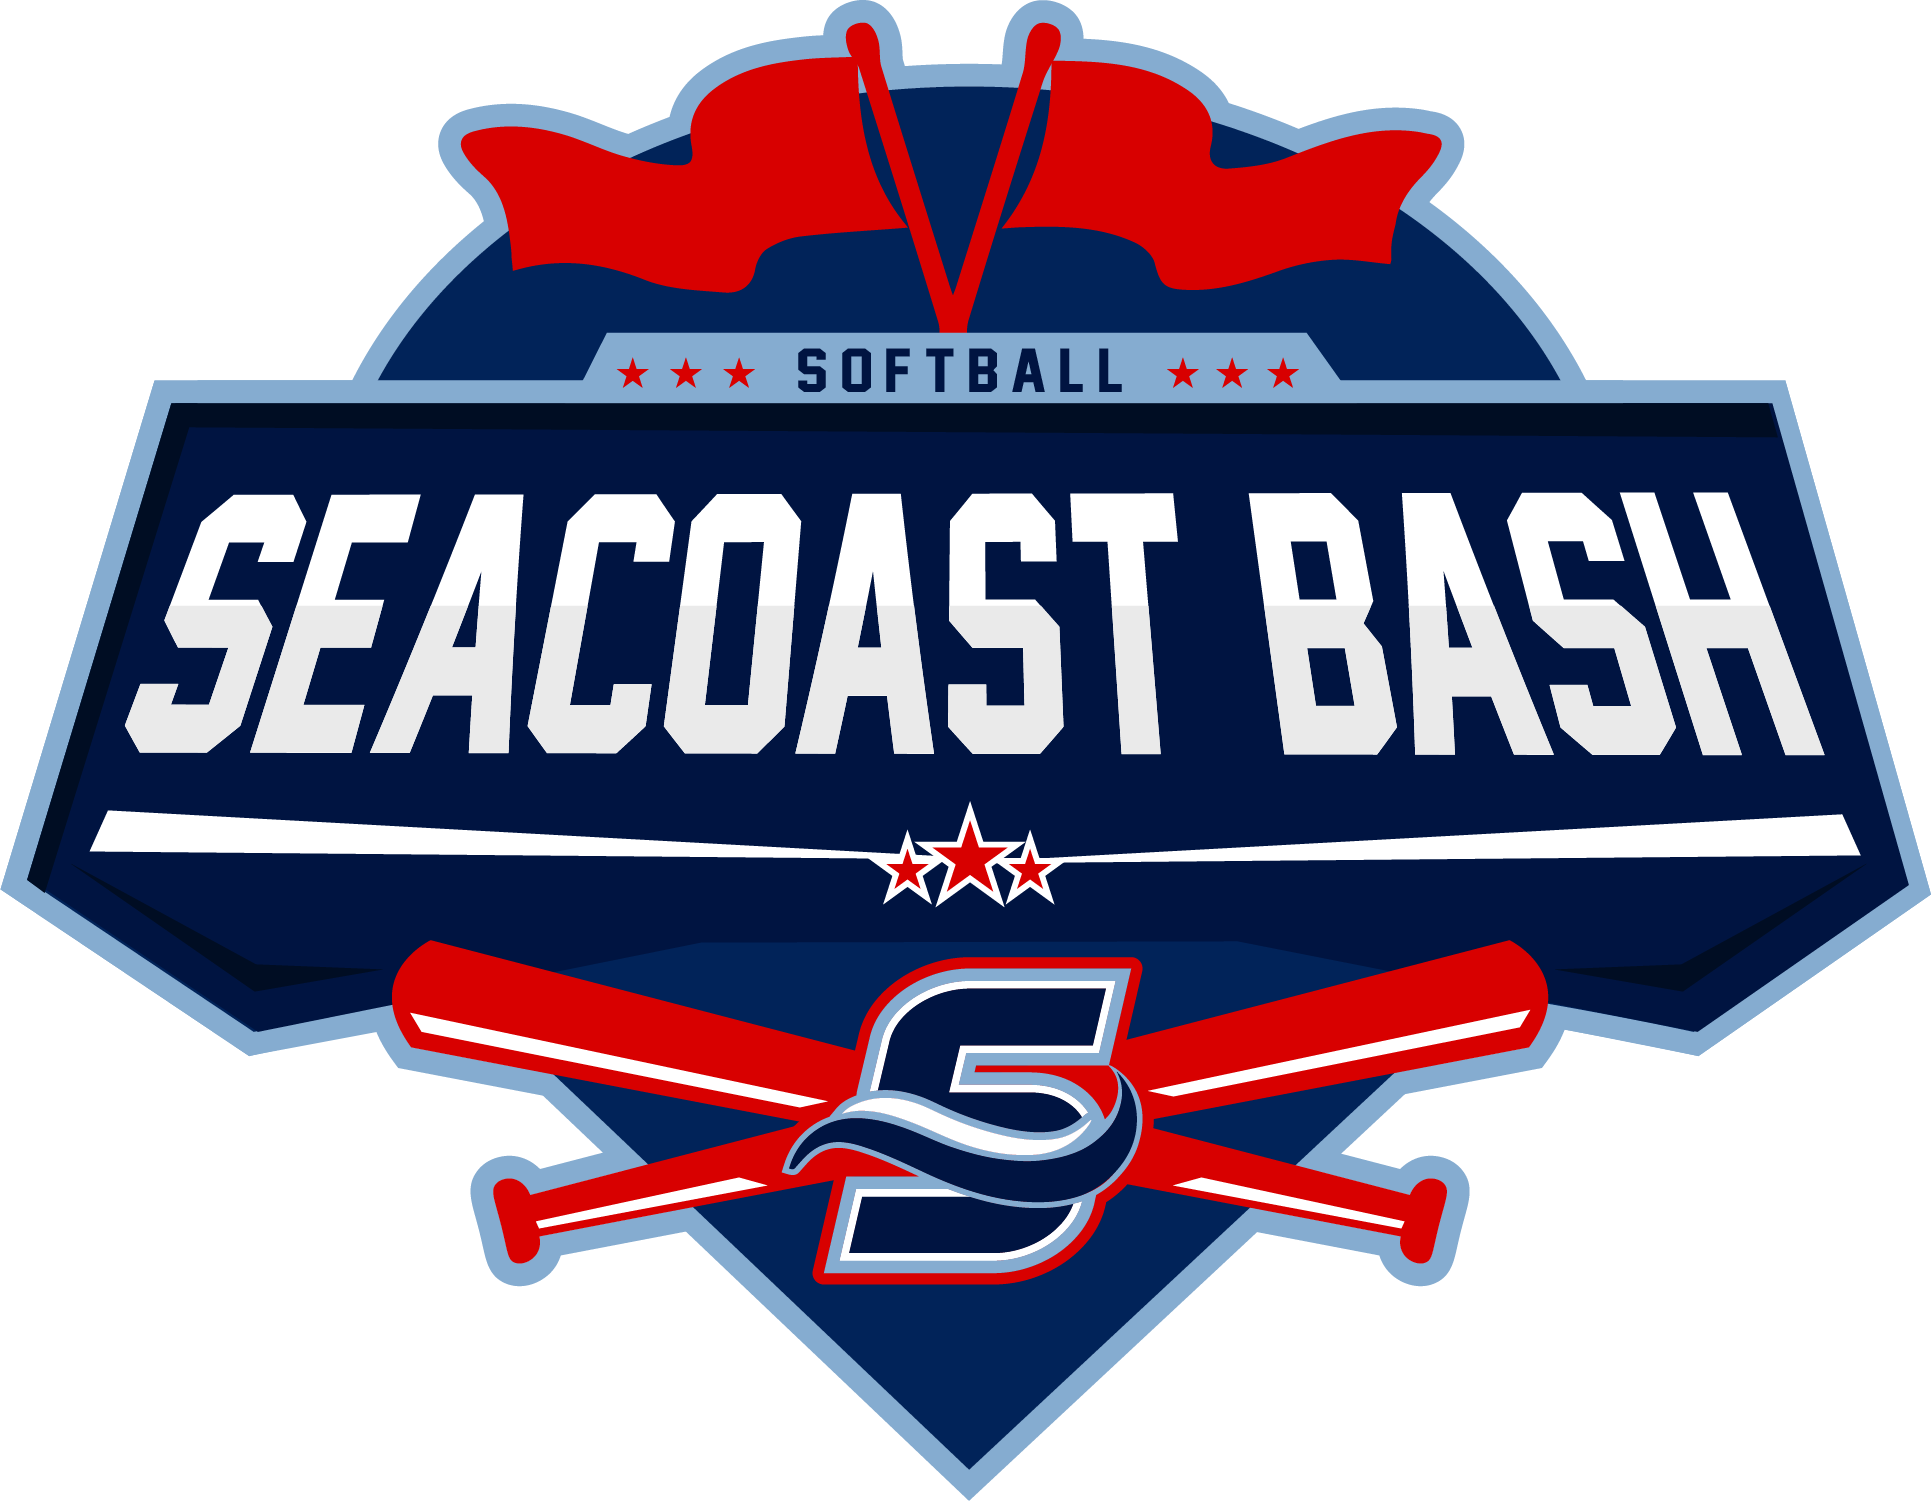 Seacoast Bash